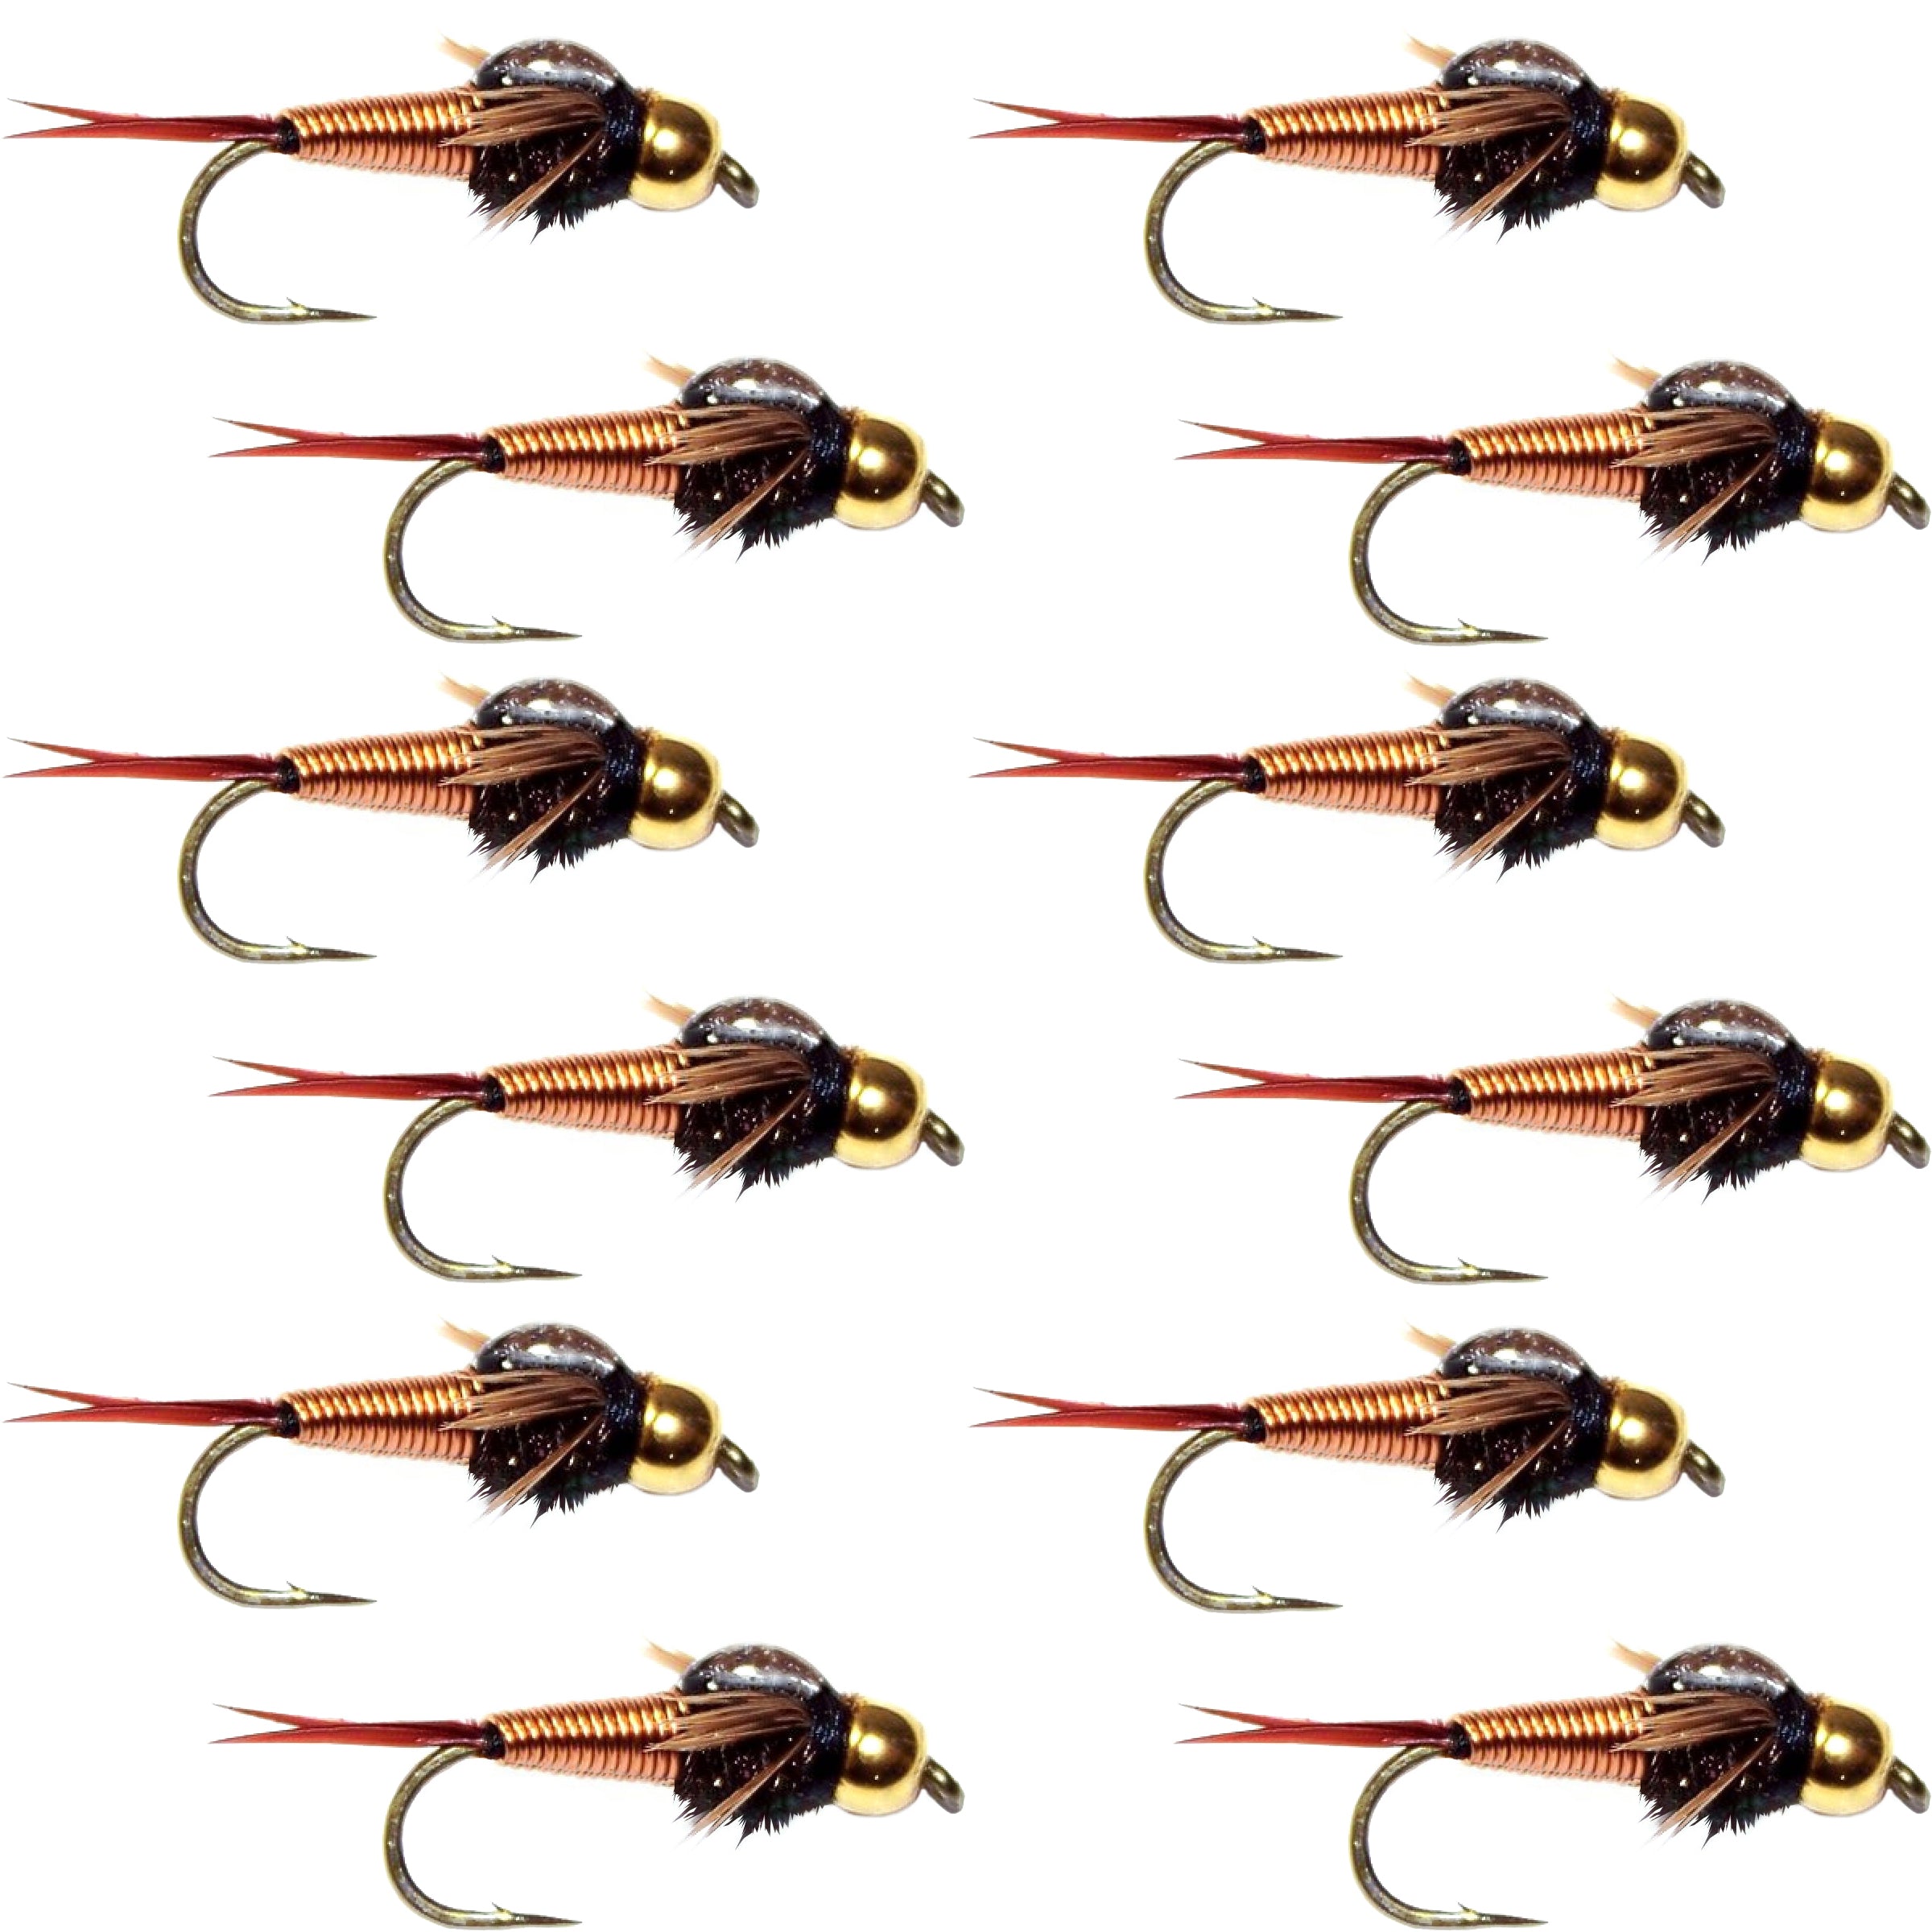 Bead Head Copper John Nymph 1 Dozen Fly Fishing Flies - Hook Size 14